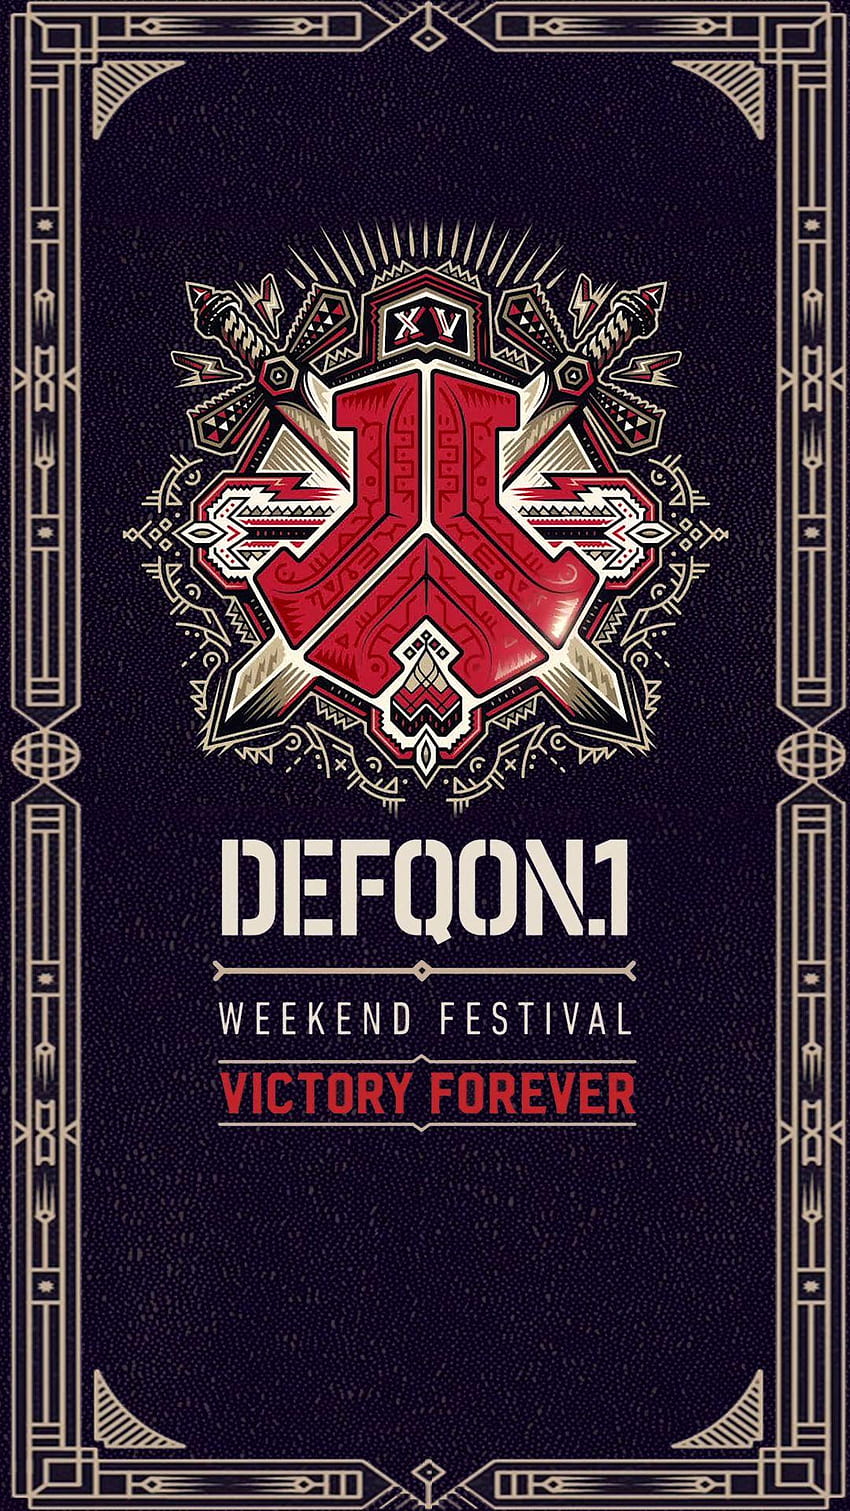 Festival Defqon.1 wallpaper ponsel HD